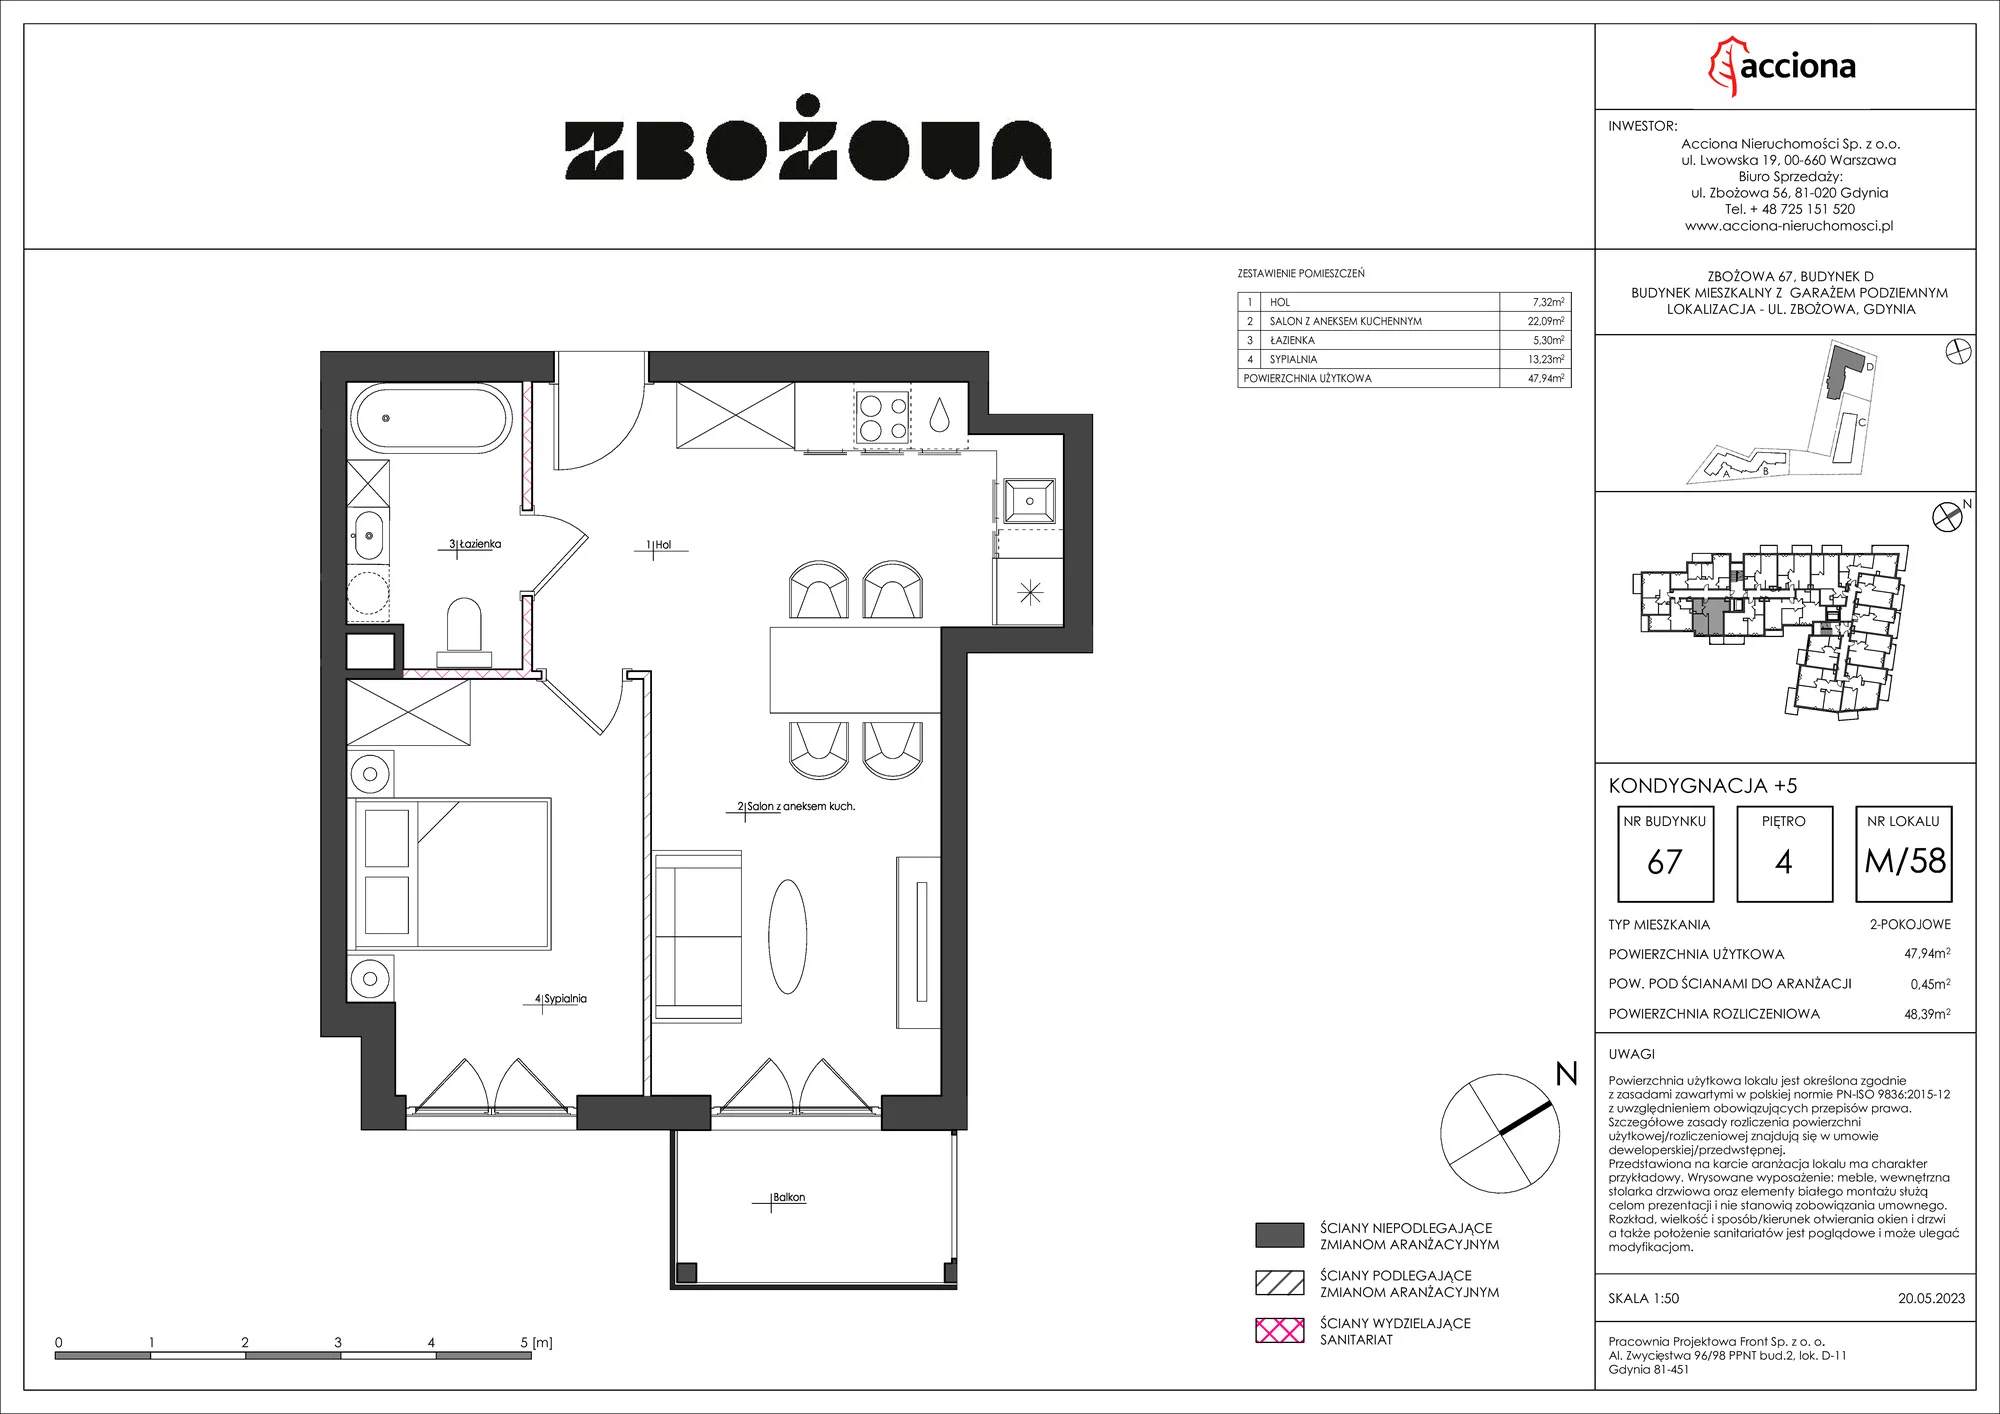 Mieszkanie 48,39 m², piętro 4, oferta nr 67.58, Zbożowa, Gdynia, Cisowa, ul. Zbożowa